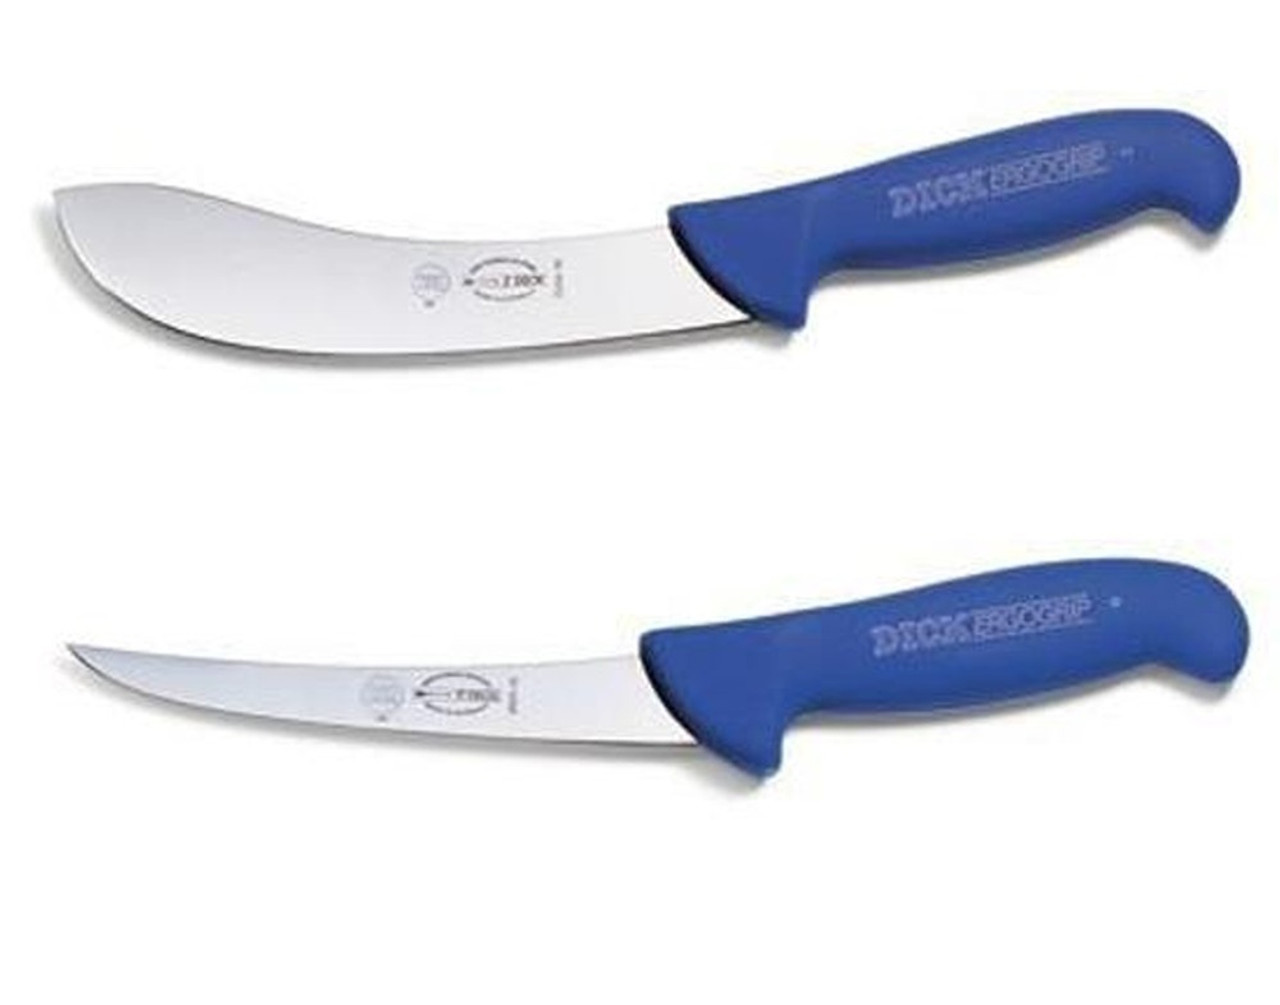 Dick ERGOGRIP Hunters Combo - 8226415 & 8299115 Skinning Boning Knife Set